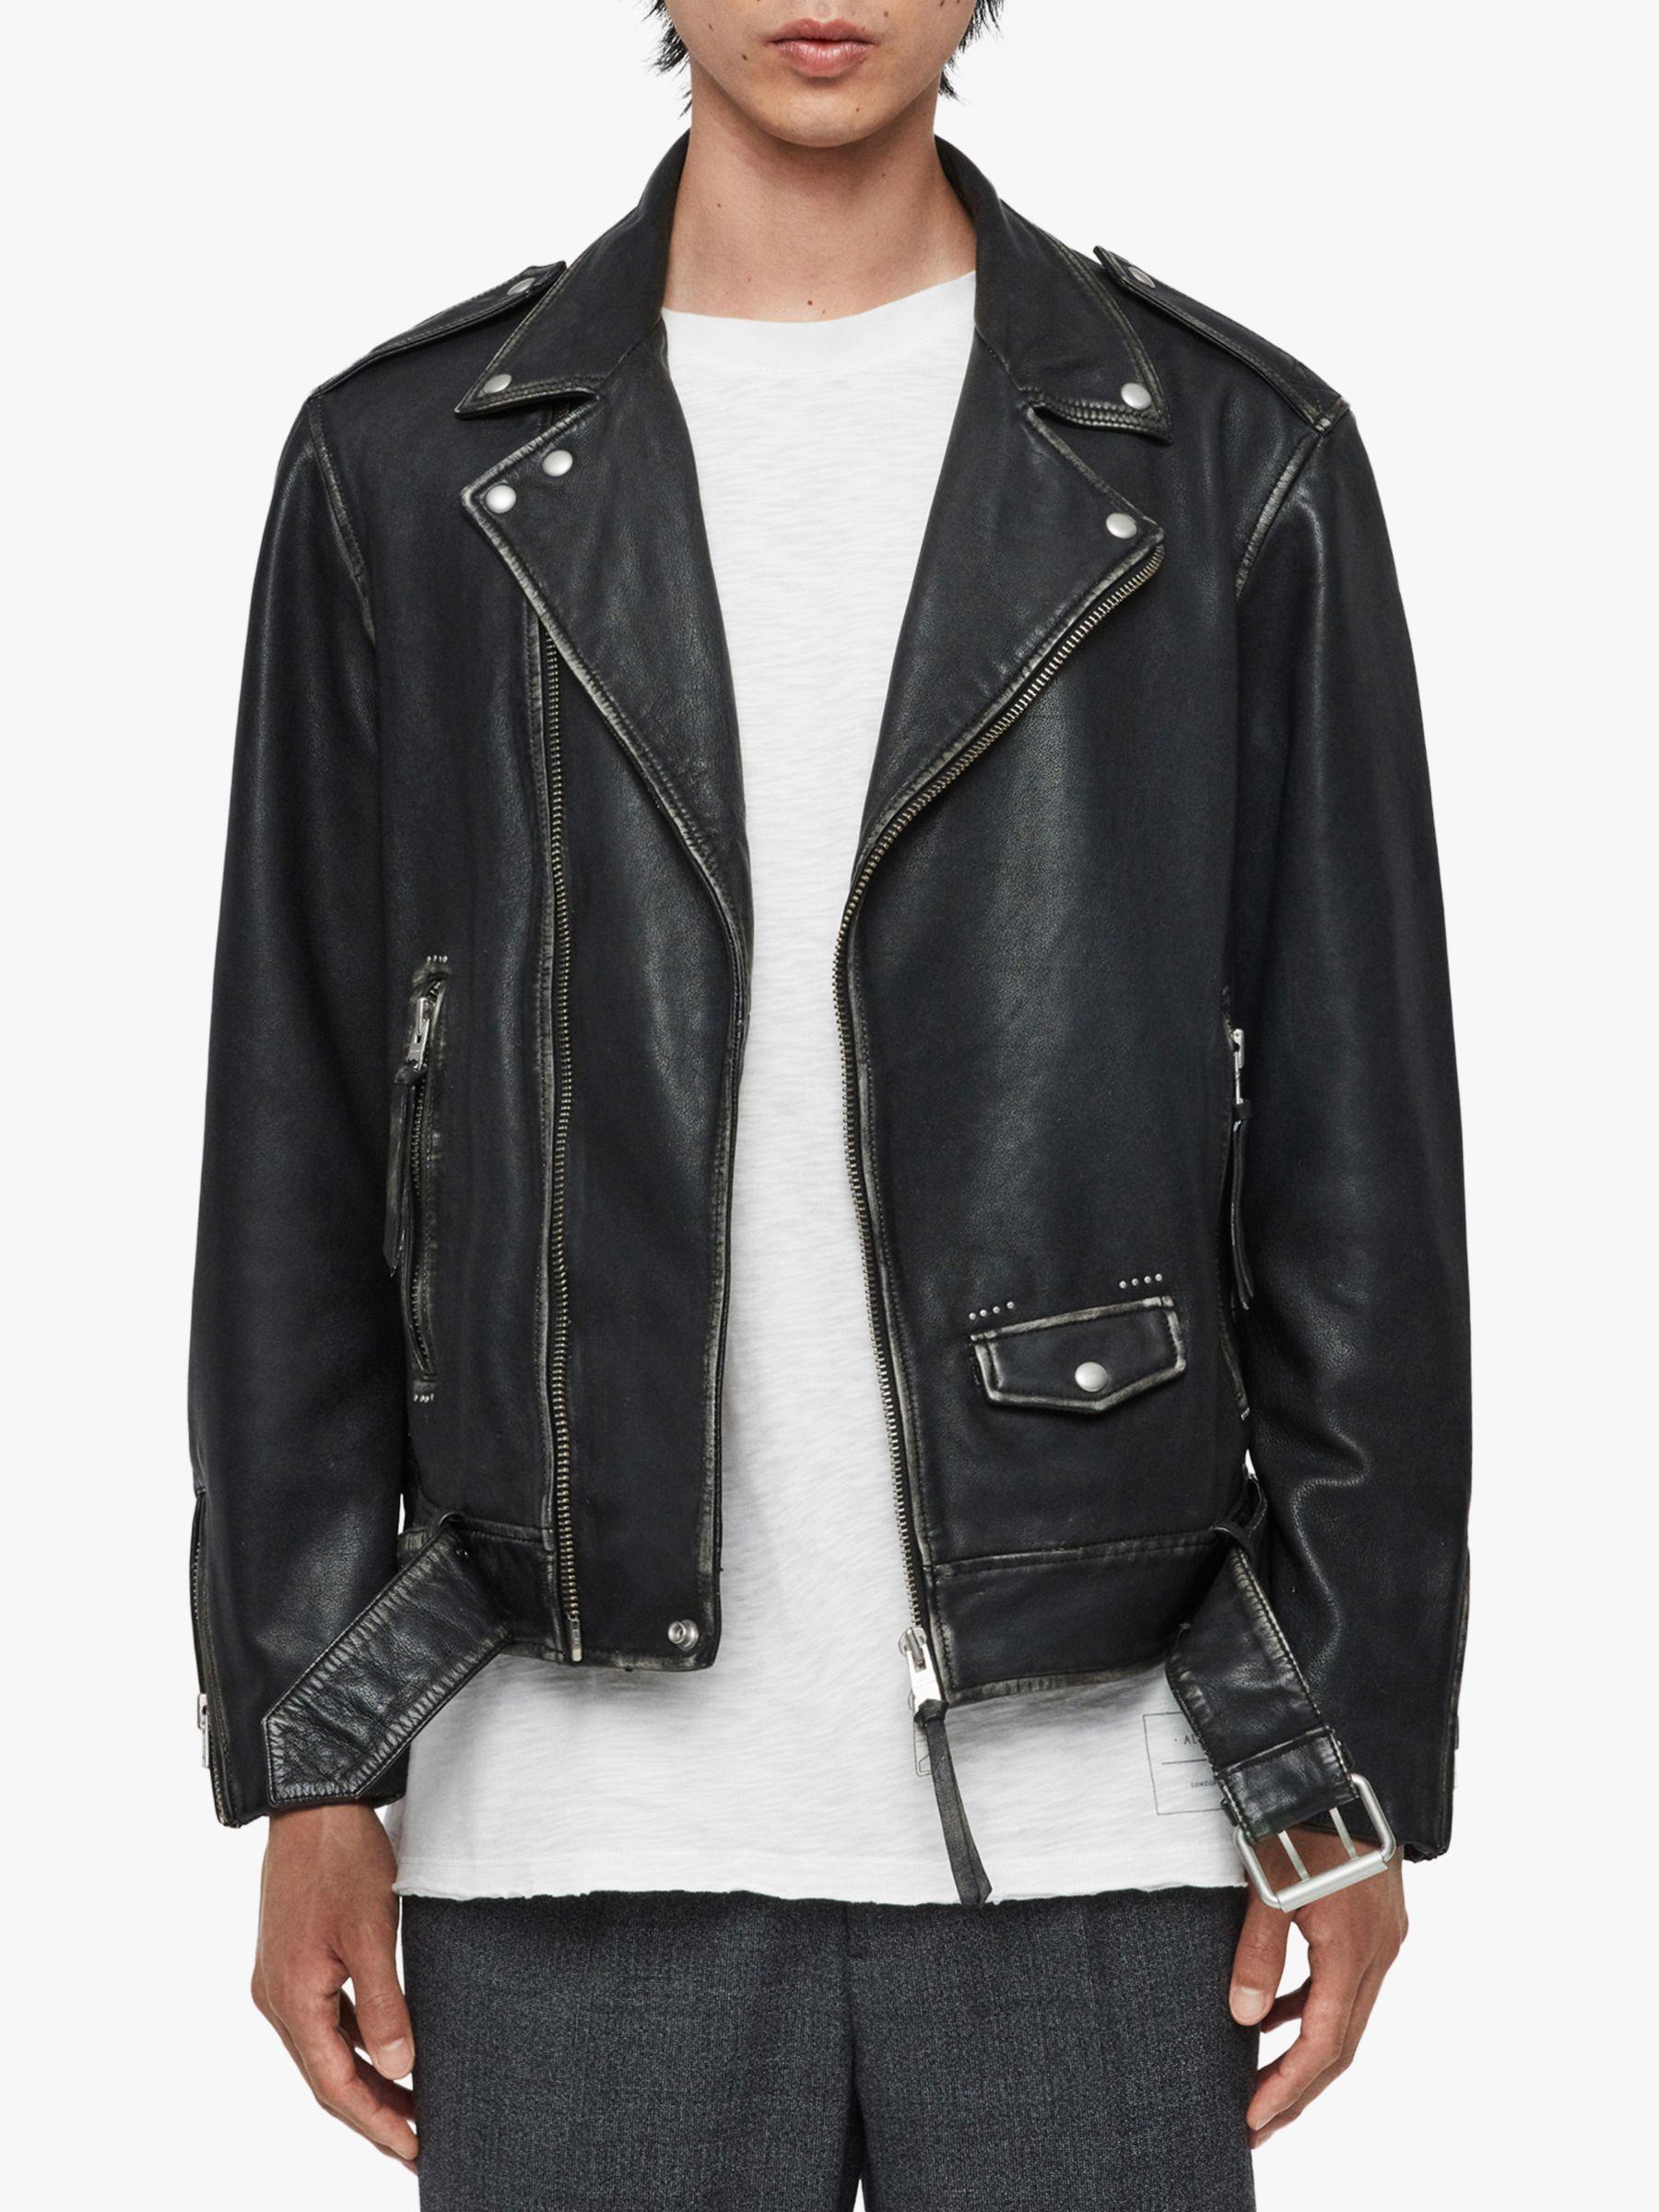 AllSaints Hawley Leather Biker Jacket in Black for Men - Lyst